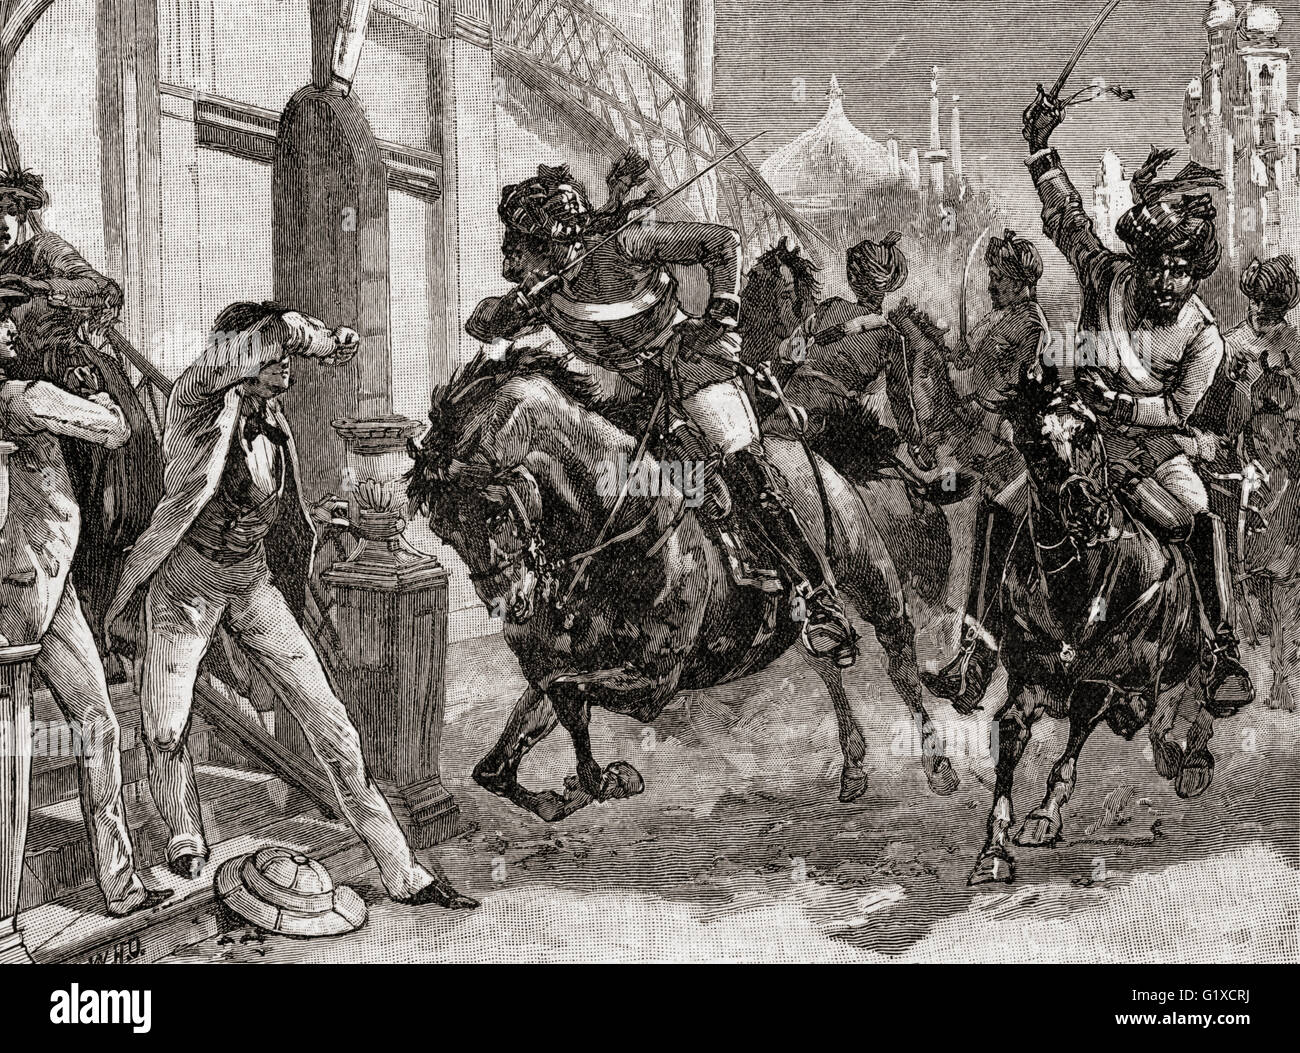 Sepoys ribelle a Delhi, India allo scoppio della ribellione indiana, 1857. I funzionari europei e i loro familiari, i cristiani indiani e i negozianti ordinari sono stati uccisi. Foto Stock